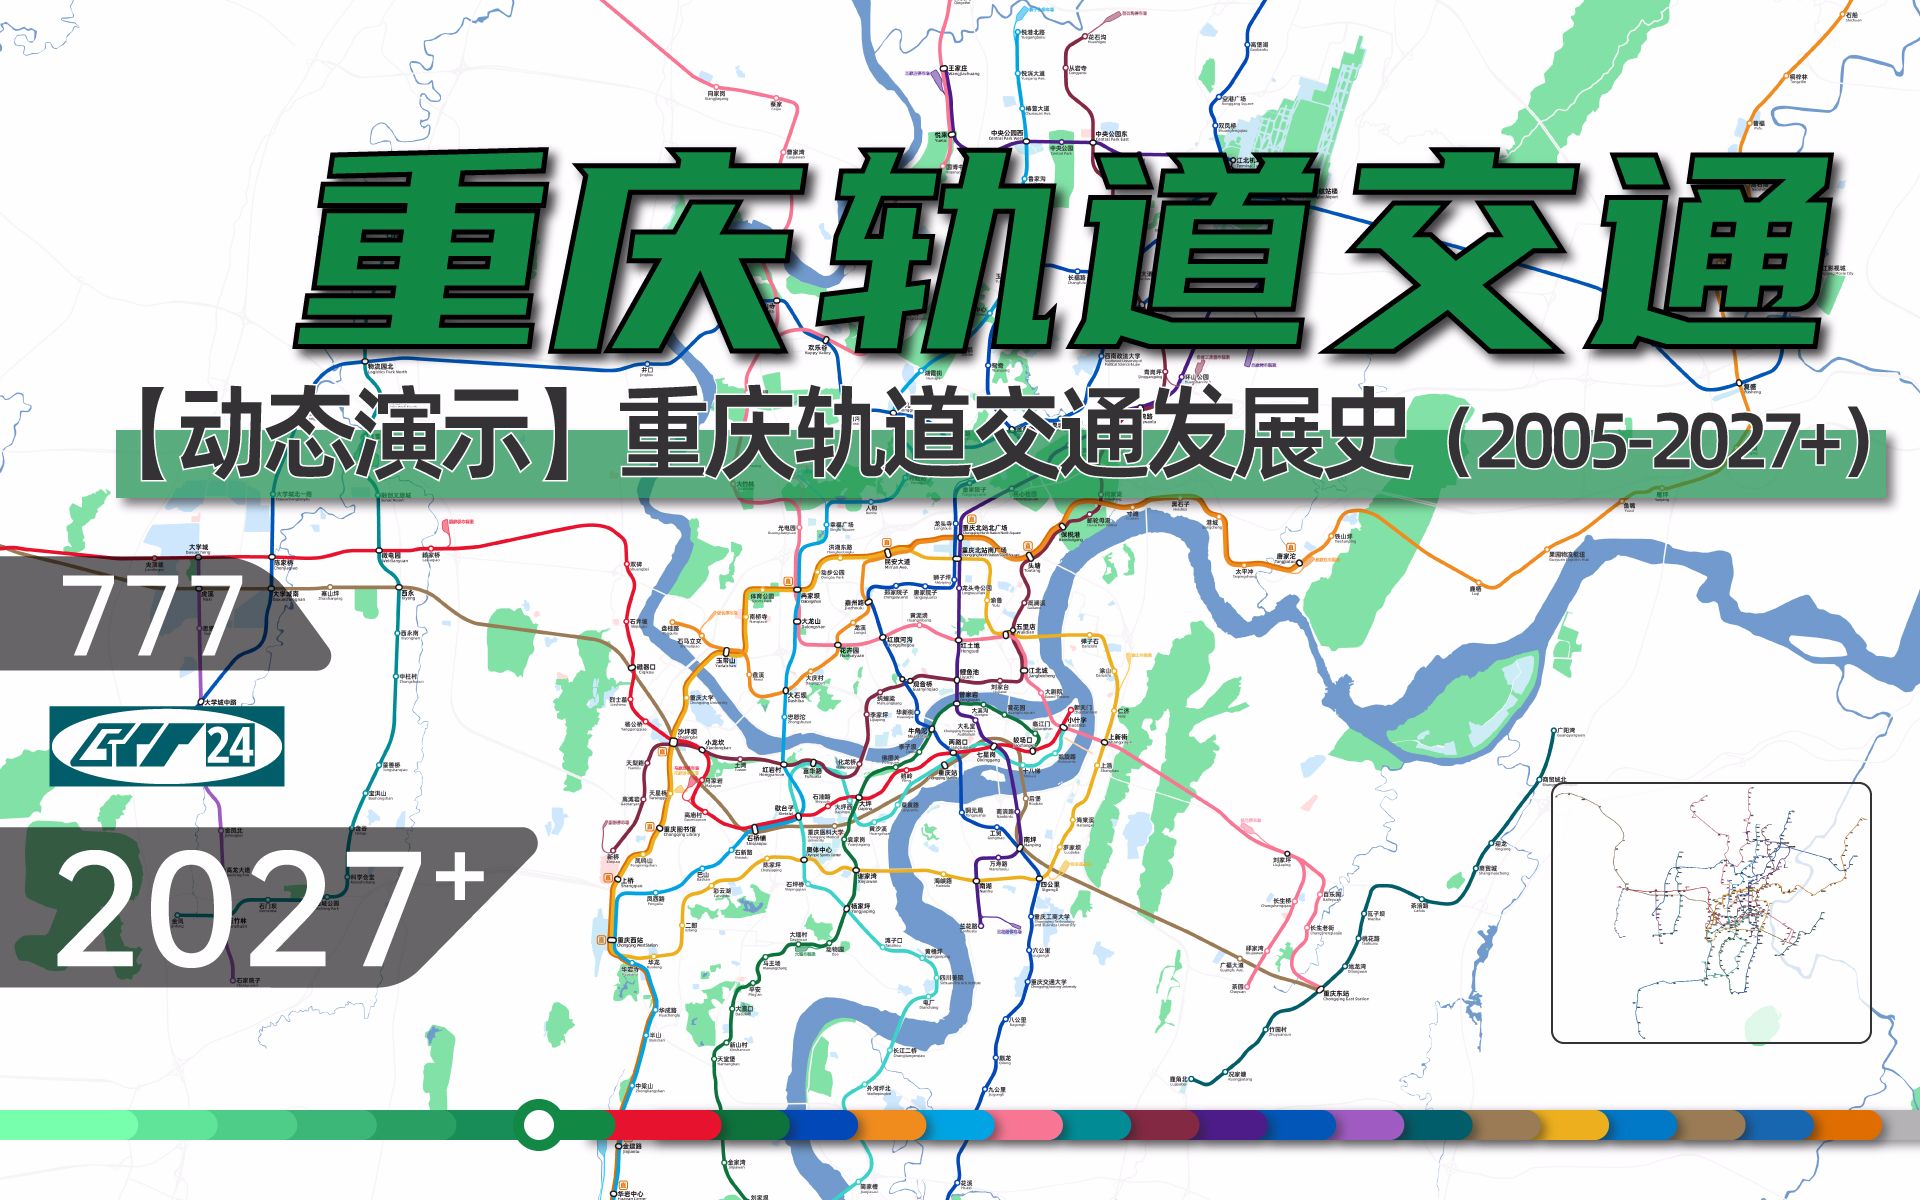 【2022版重庆地铁】重庆轨道交通动态发展史（2005-2027+）